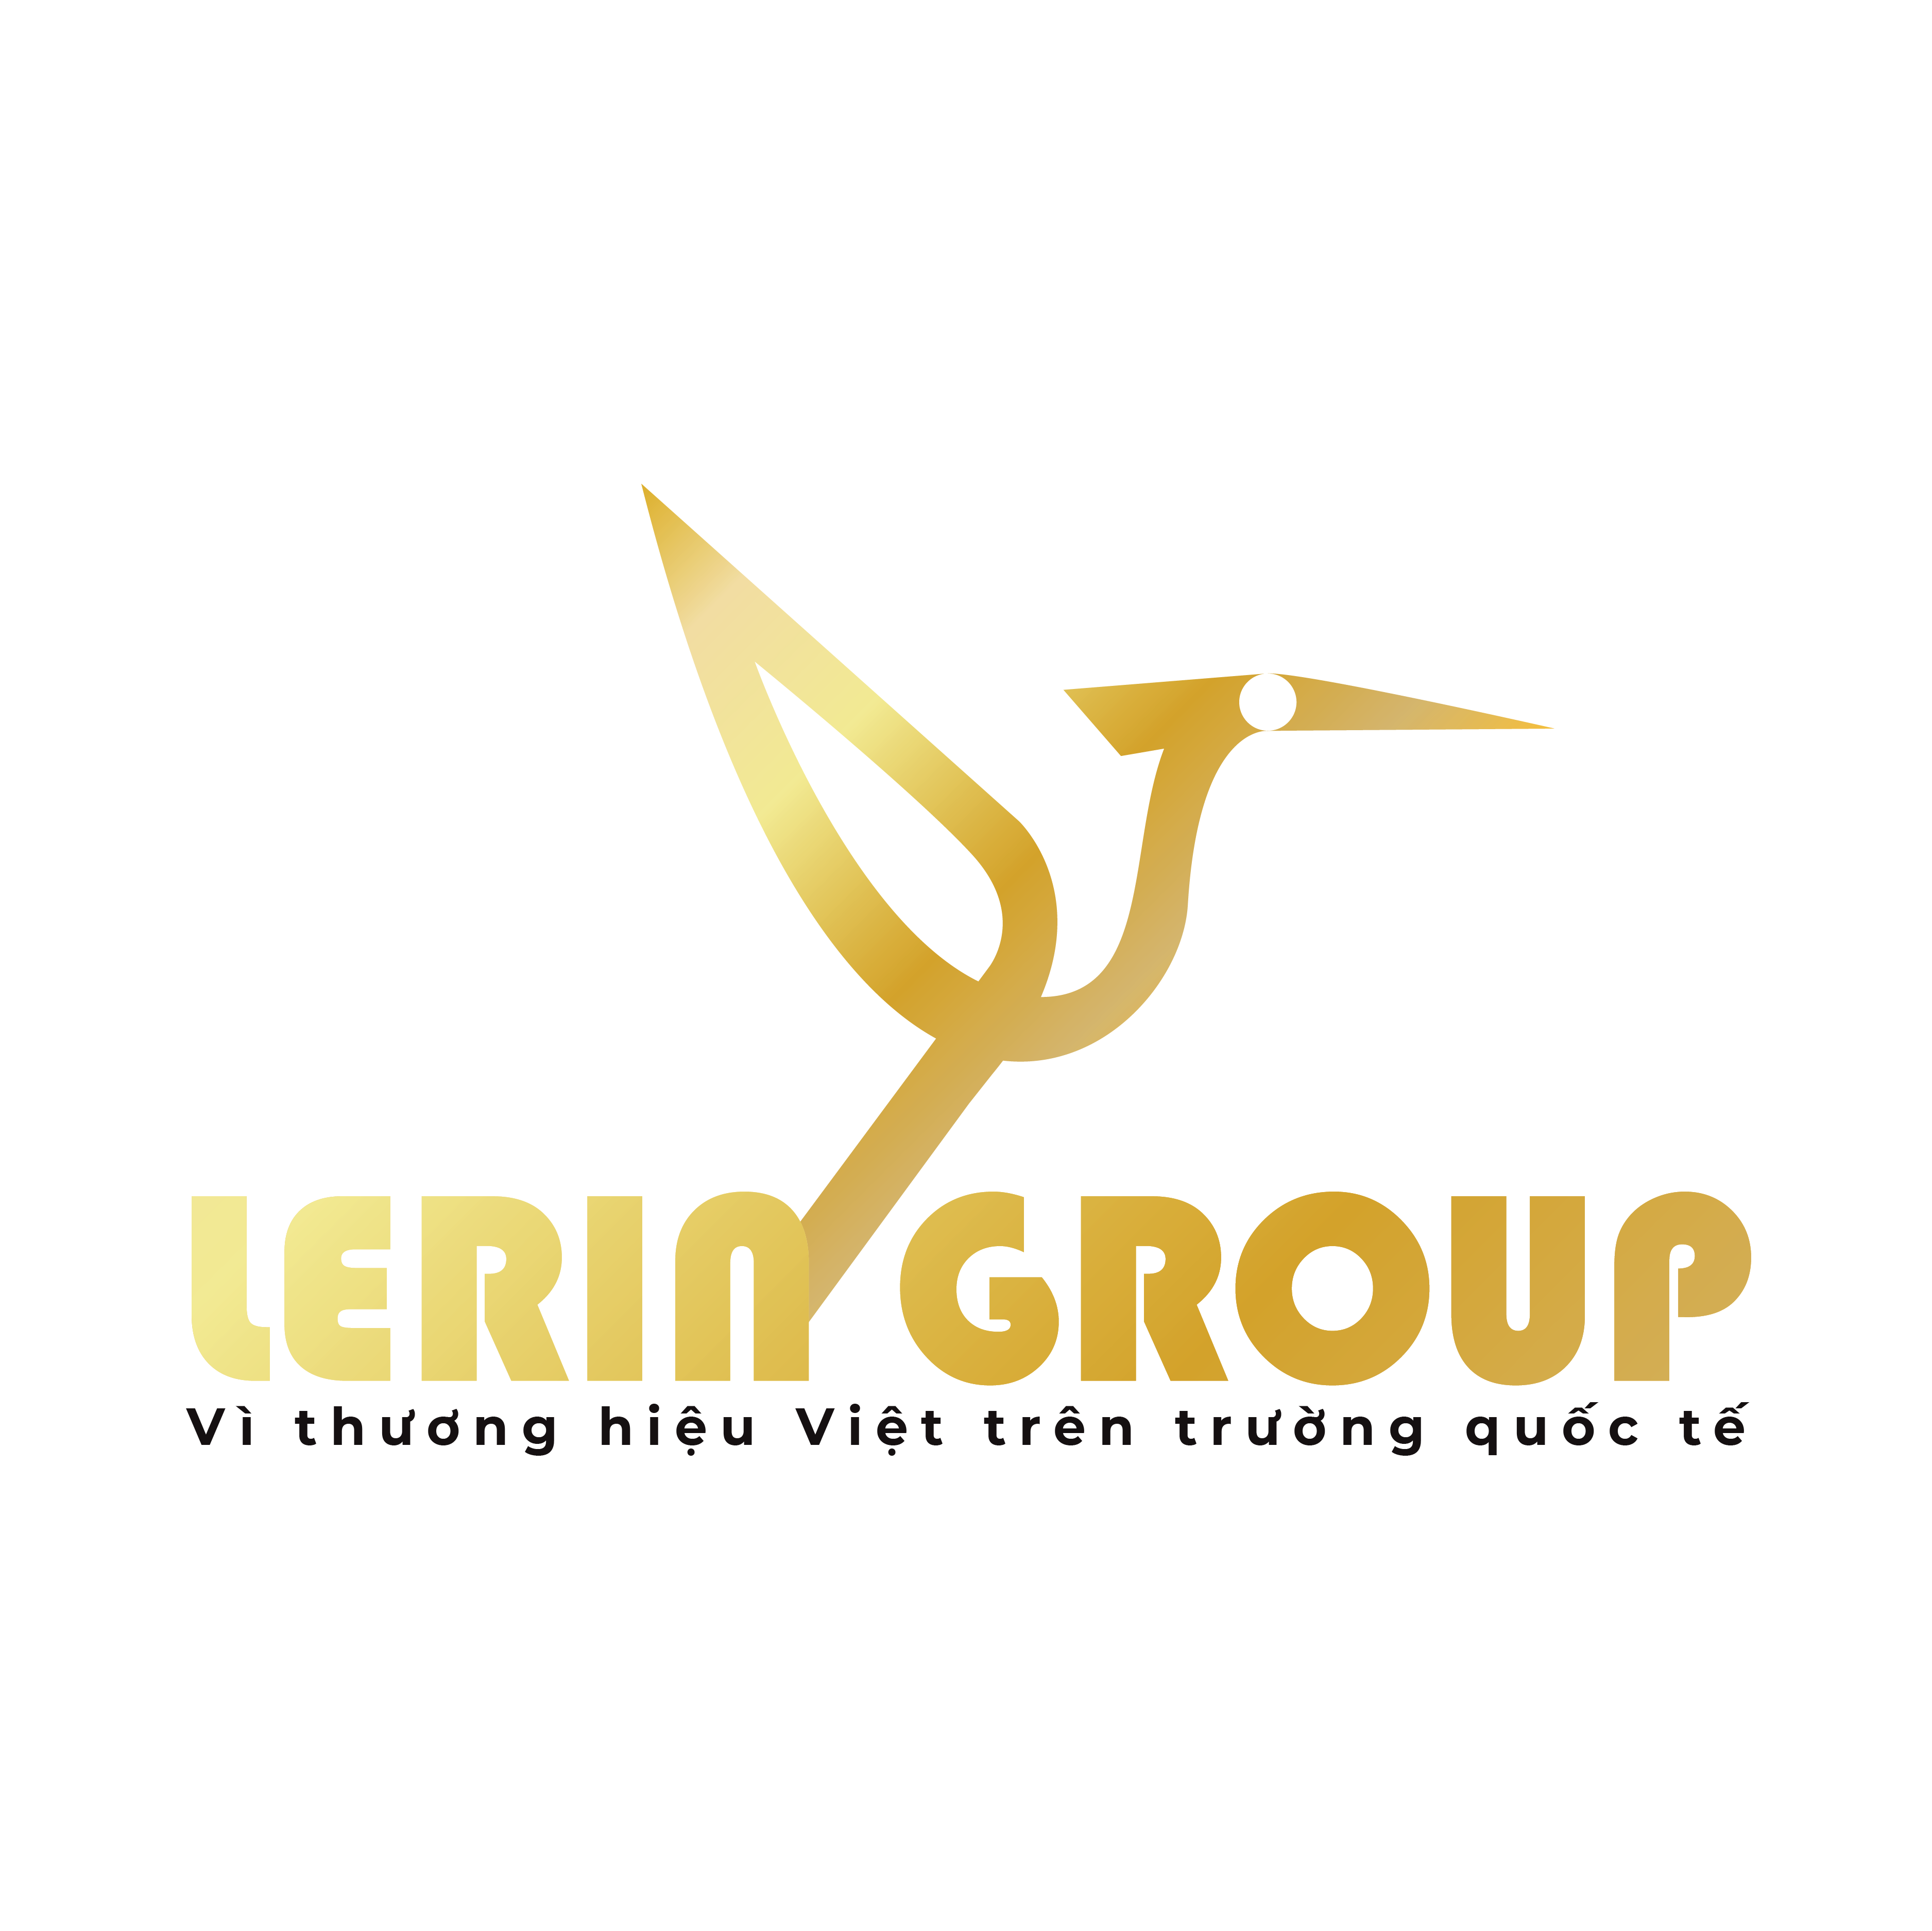 TẬP ĐOÀN LERIN GROUP – Vì thương hiệu Việt trên trường quốc tế